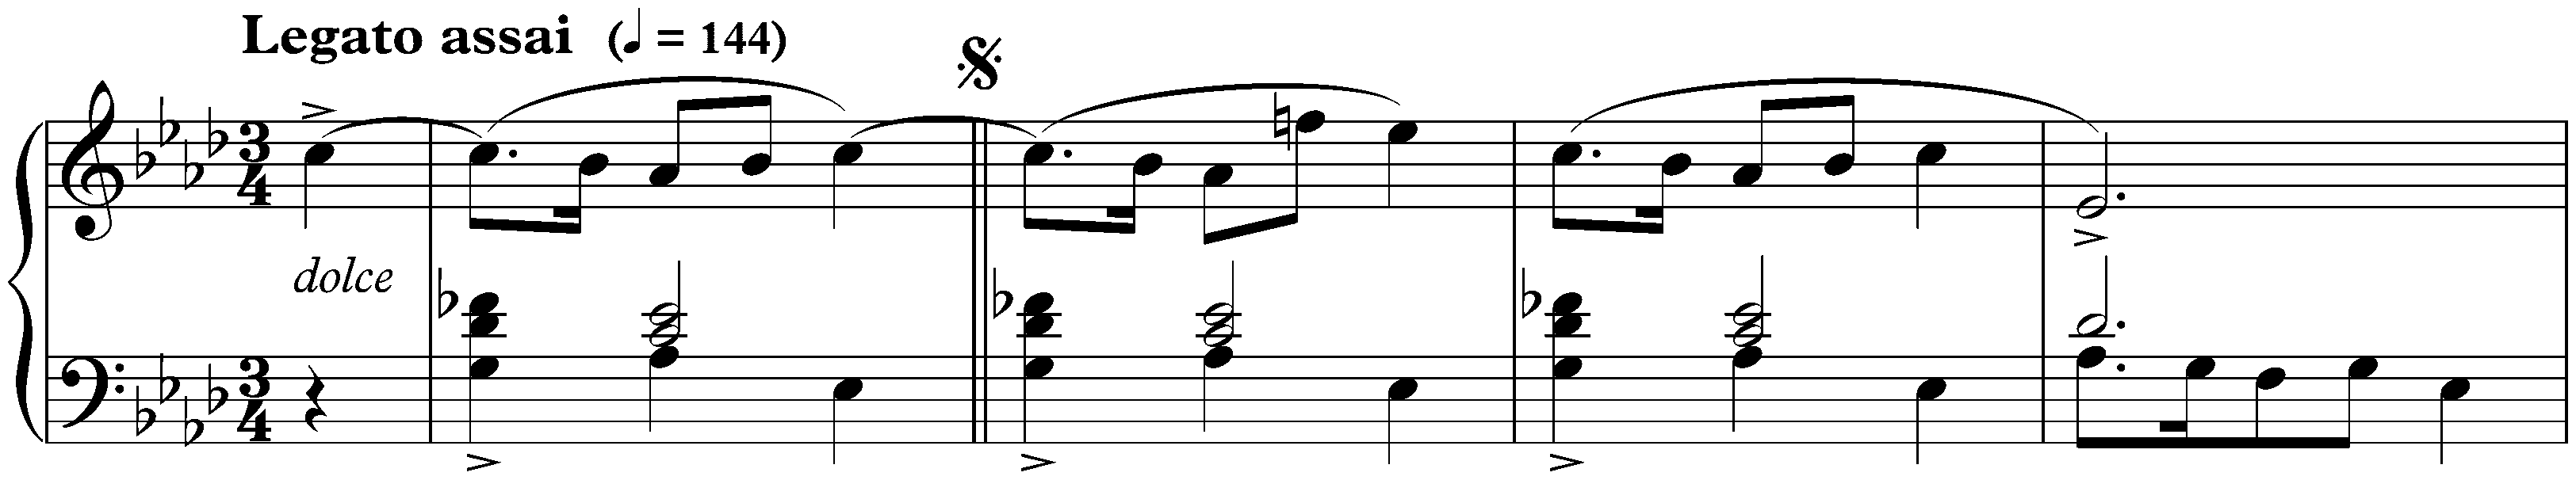 Four Mazurkas, op. 17; 3. A-flat major